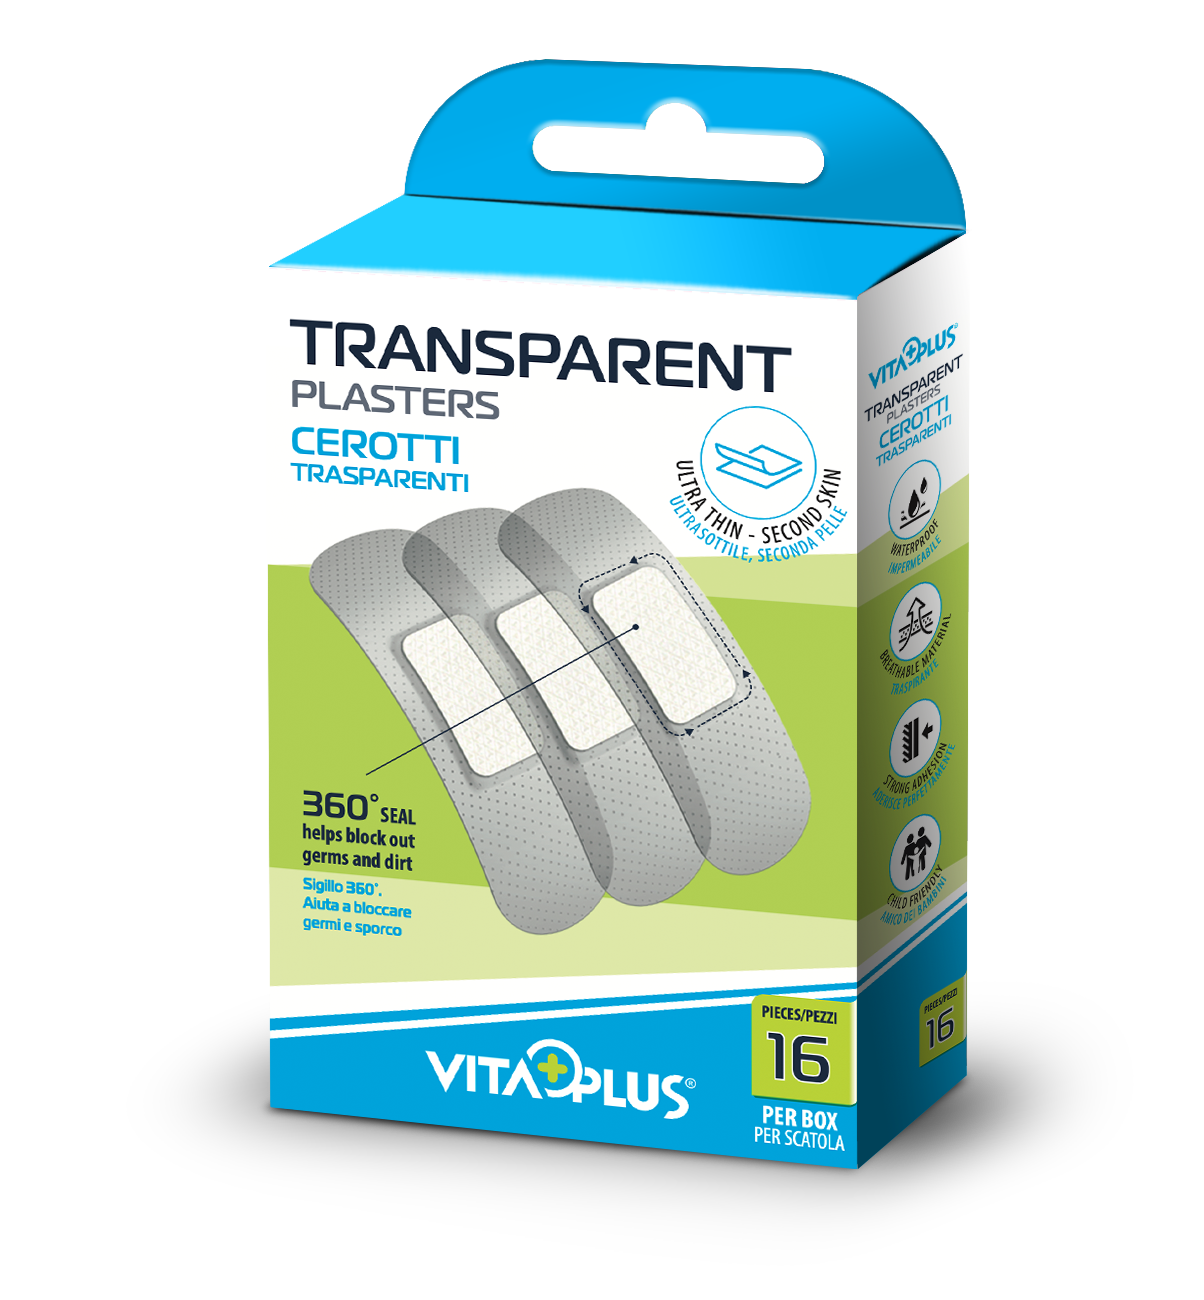 Vitaplus plasturi transparenti - VP61311